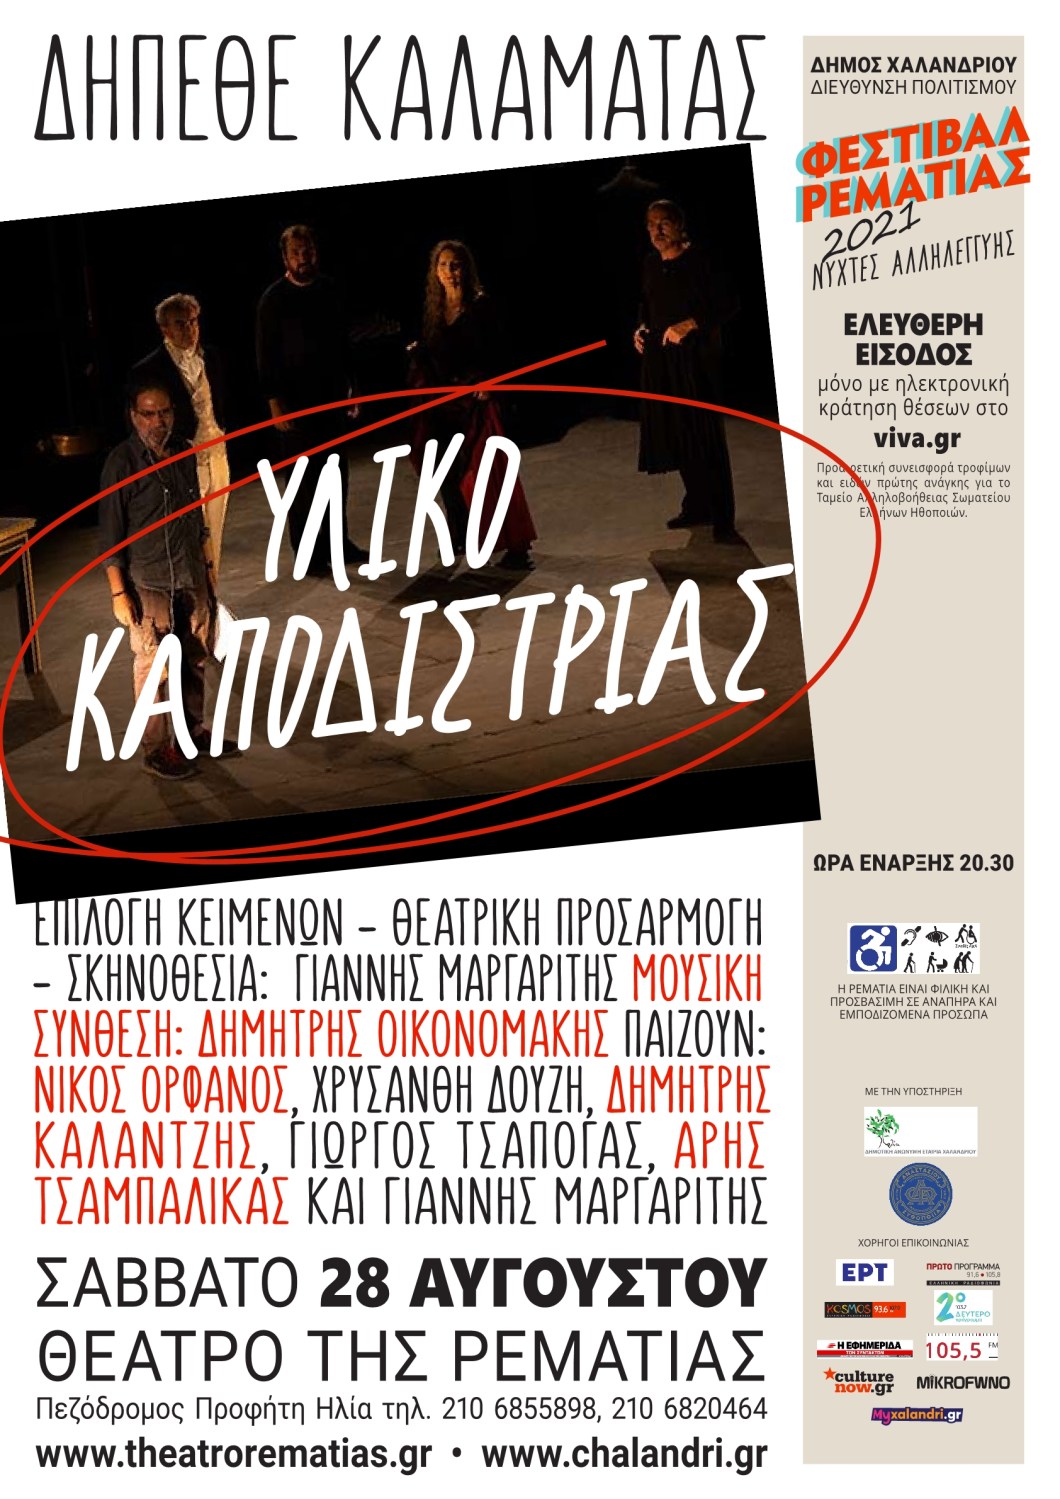 Υλικό Καποδίστριας – Μια παράσταση για τον πρώτο κυβερνήτη του Eλληνικού κράτους στη Ρεματιά